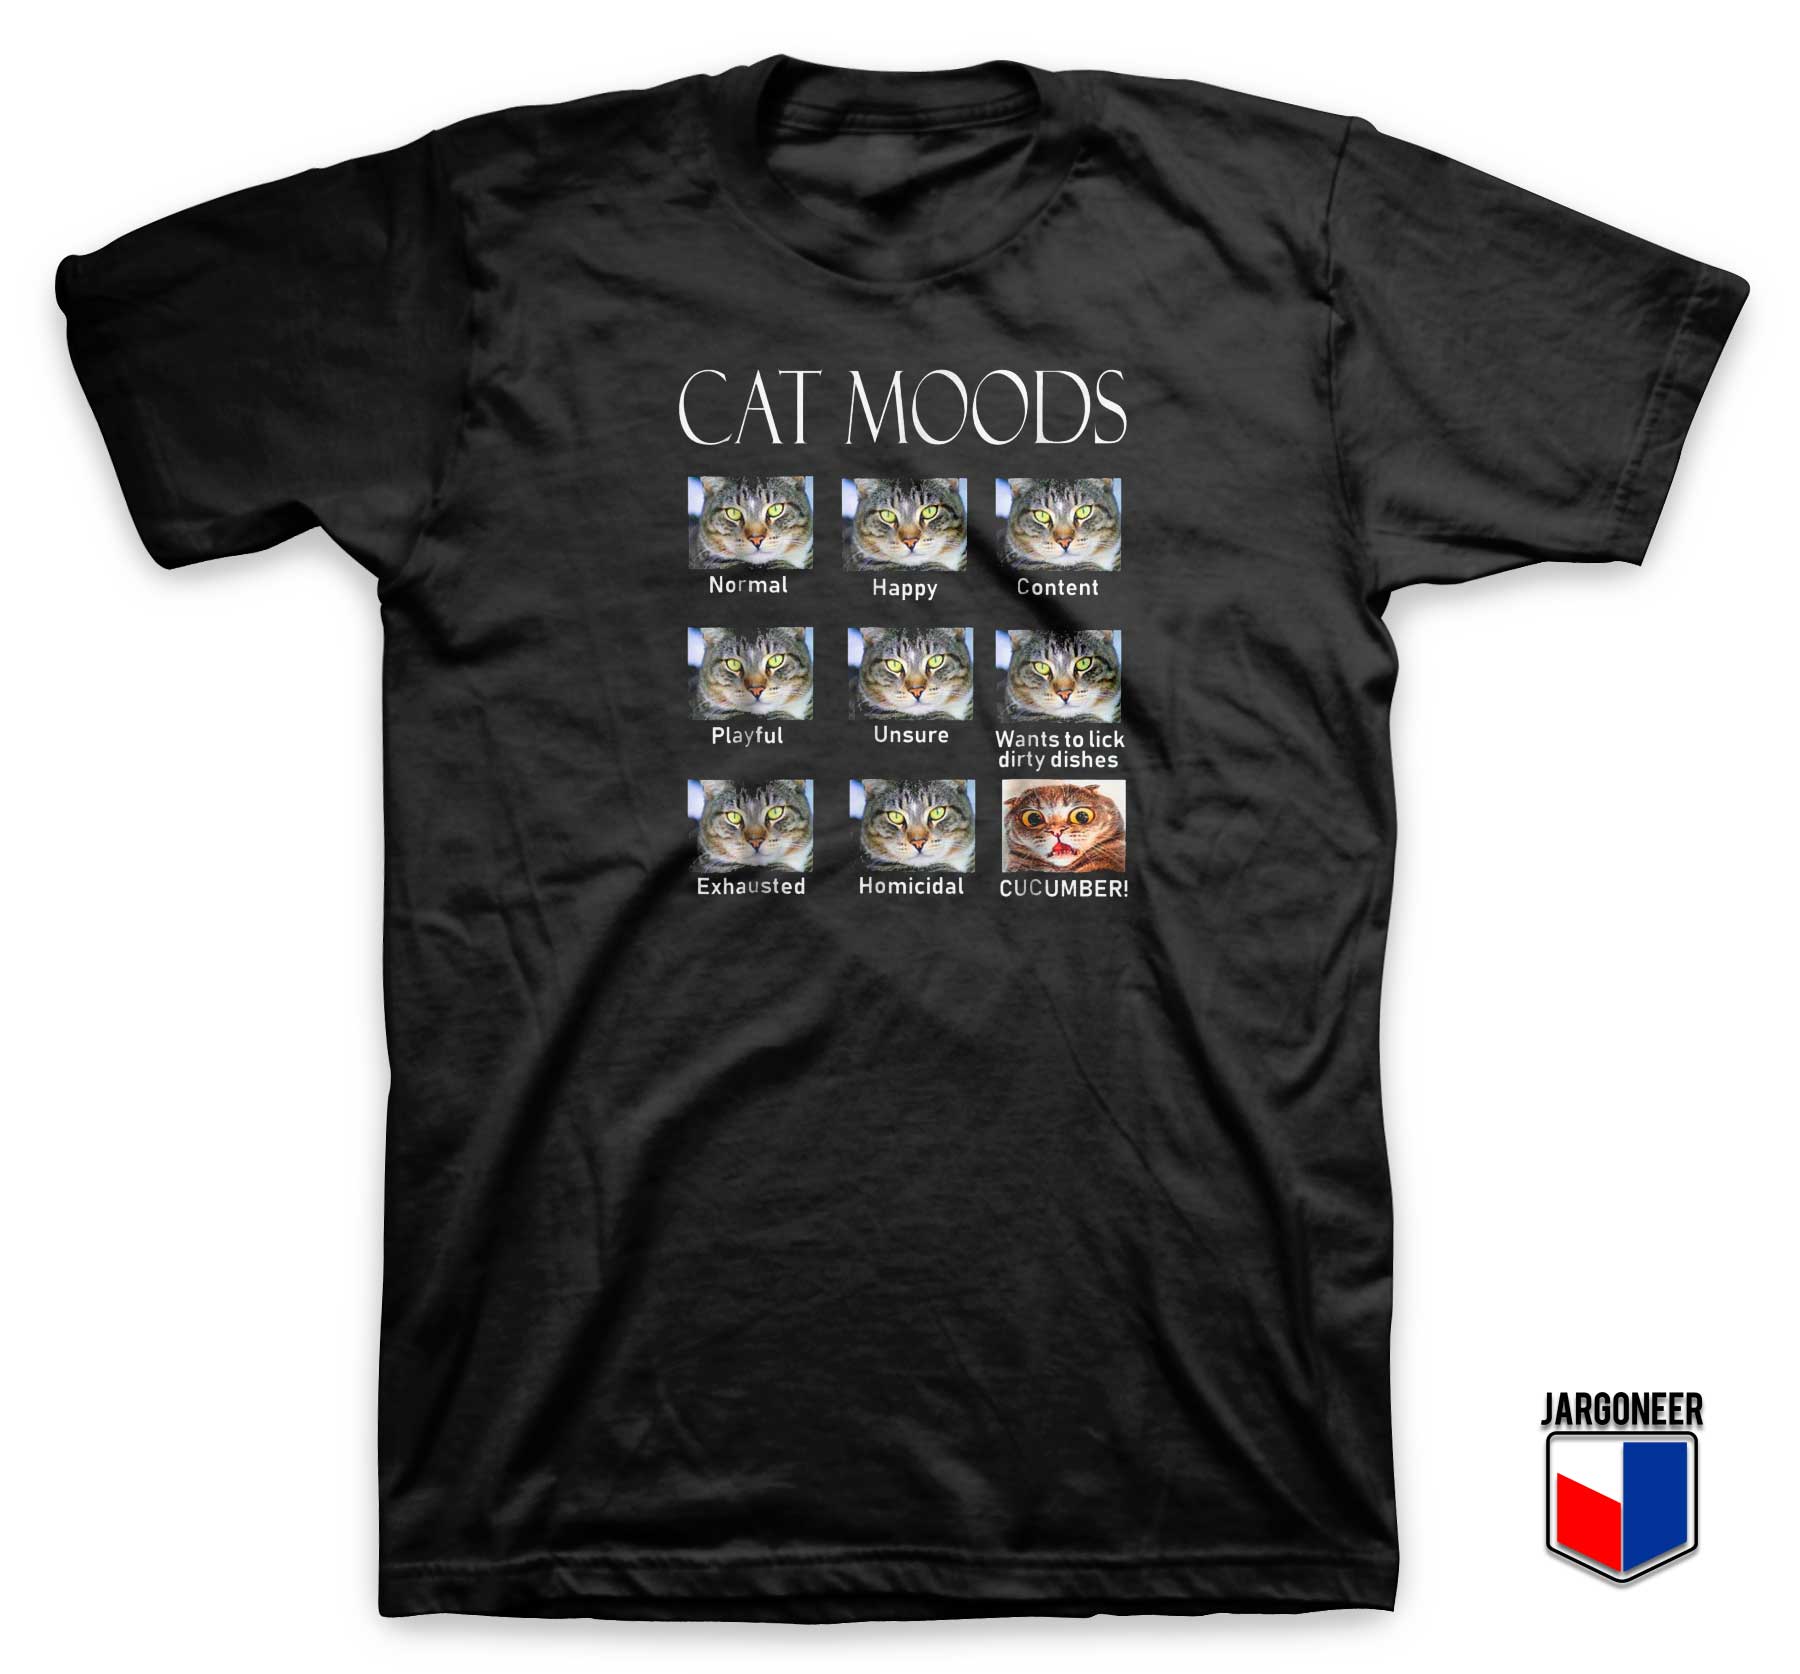 Cat Moods T Shirt - Shop Unique Graphic Cool Shirt Designs